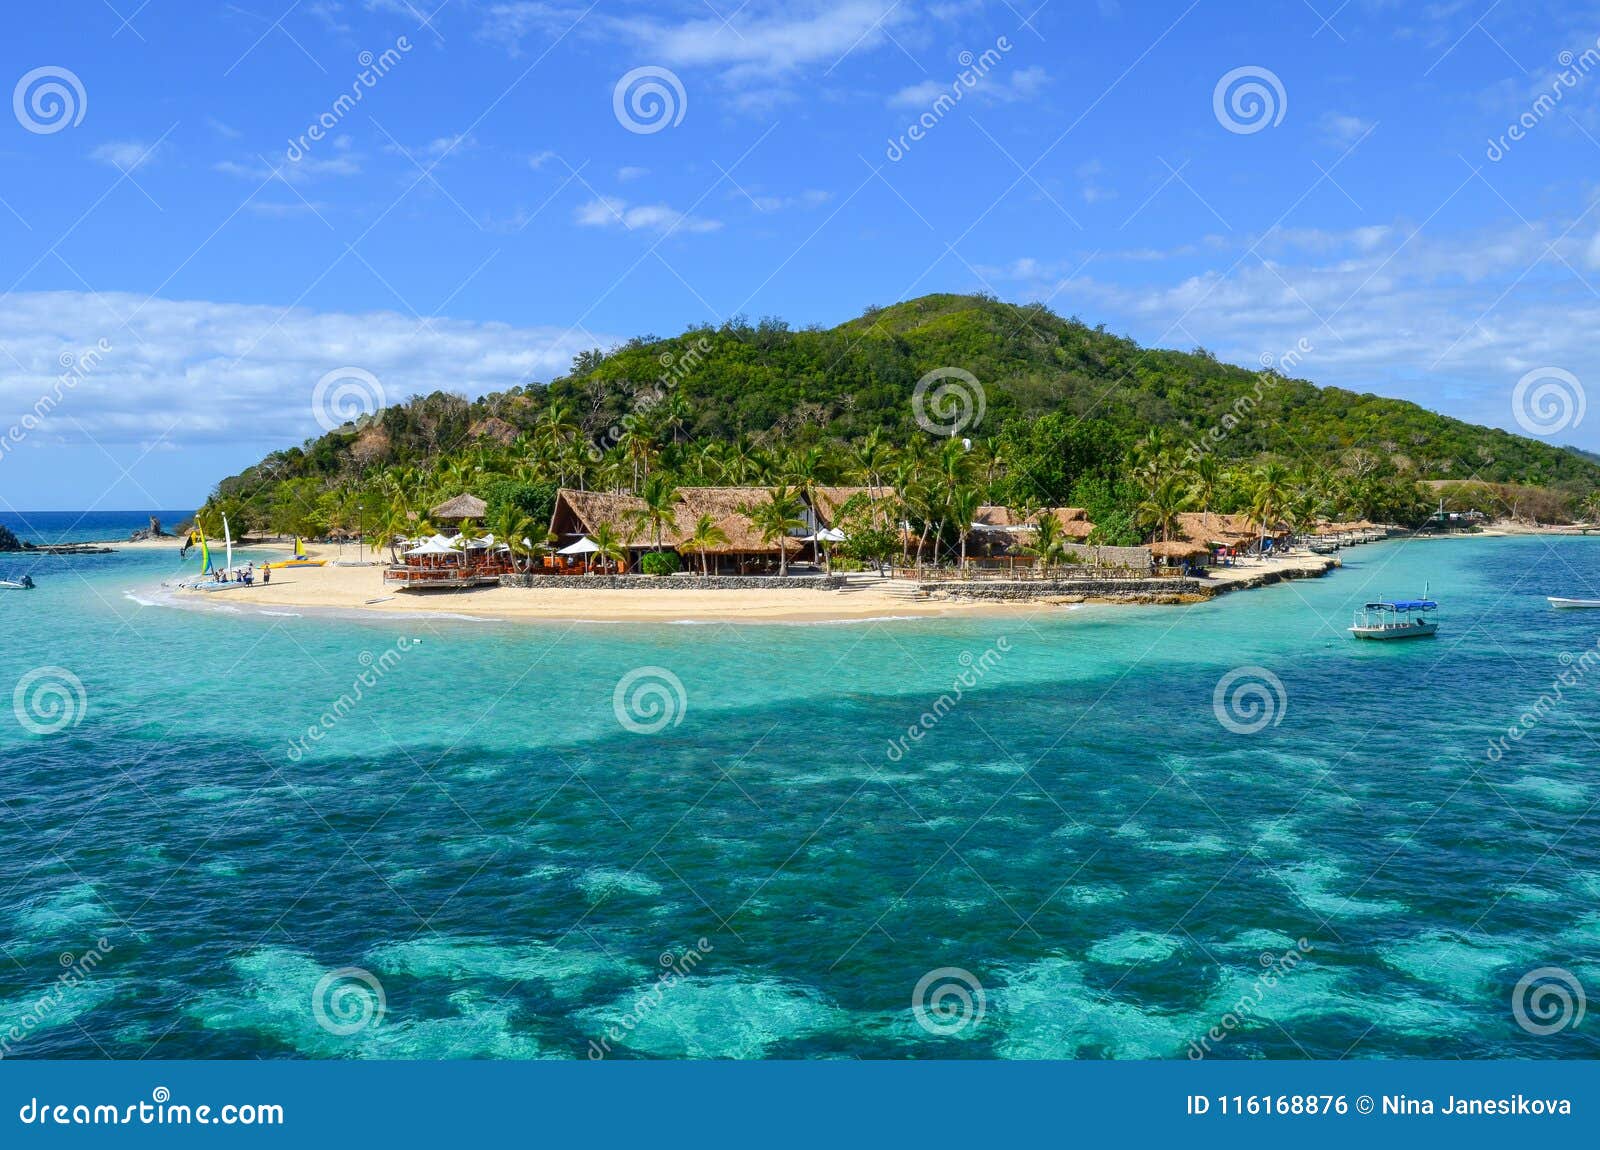 castaway island, mamanucas, fiji